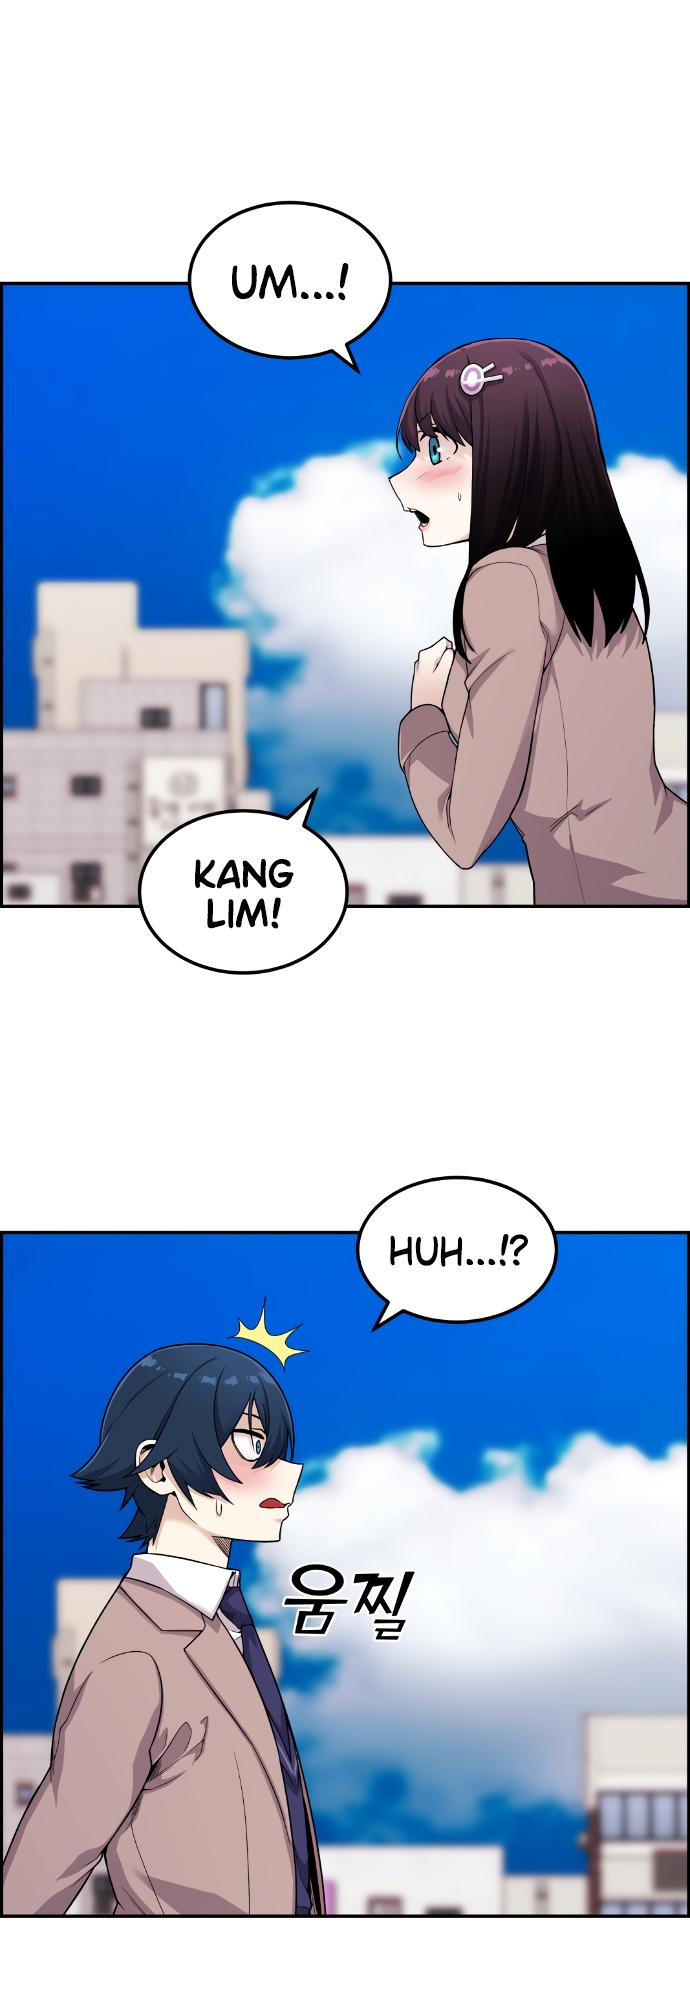 Webtoon Character Na Kang Lim - Page 2